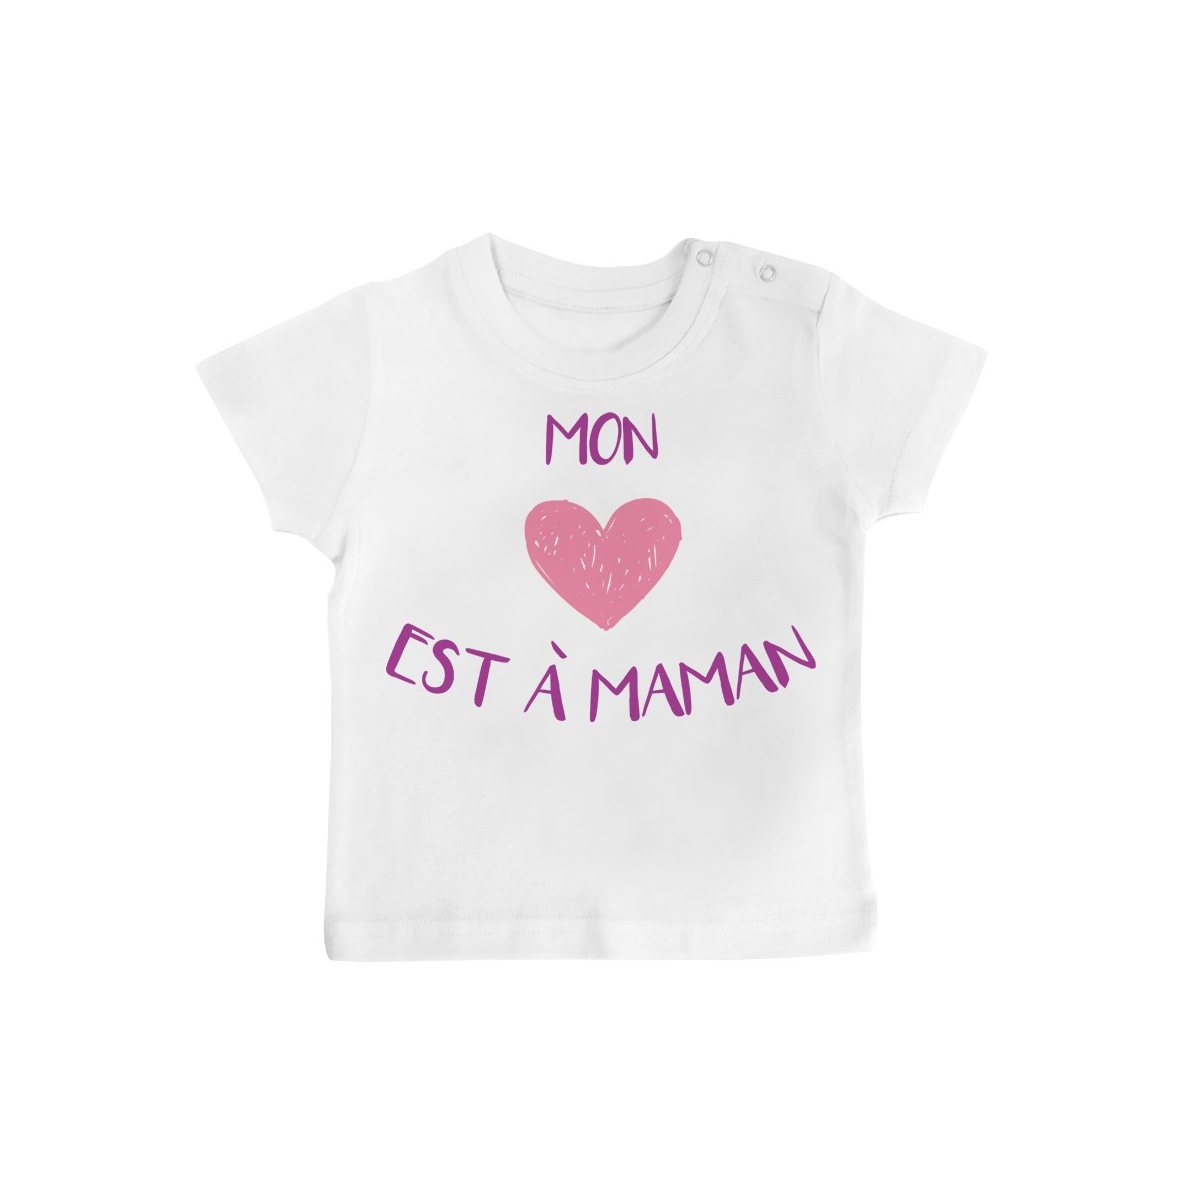 T-Shirt bébé Mon coeur est à maman